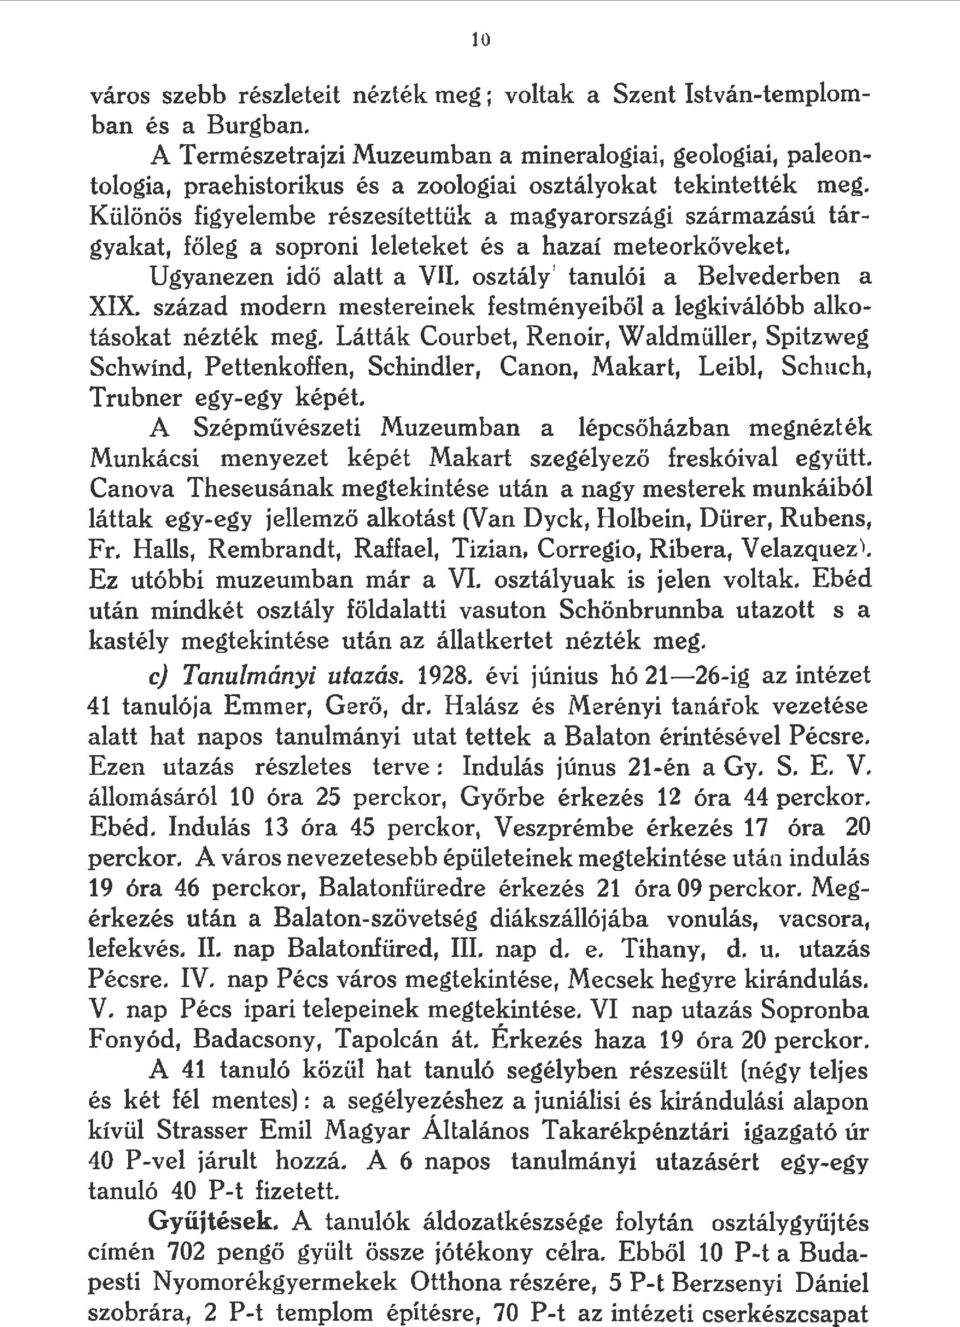 Küönös figyeembe részesítettük a magyarországi származású tárgyakat, főeg a soproni eeteket és a hazaí meteorkőveket. Ugyanezen idő aatt a VII. osztáy tanuói a Bevederben a XIX.